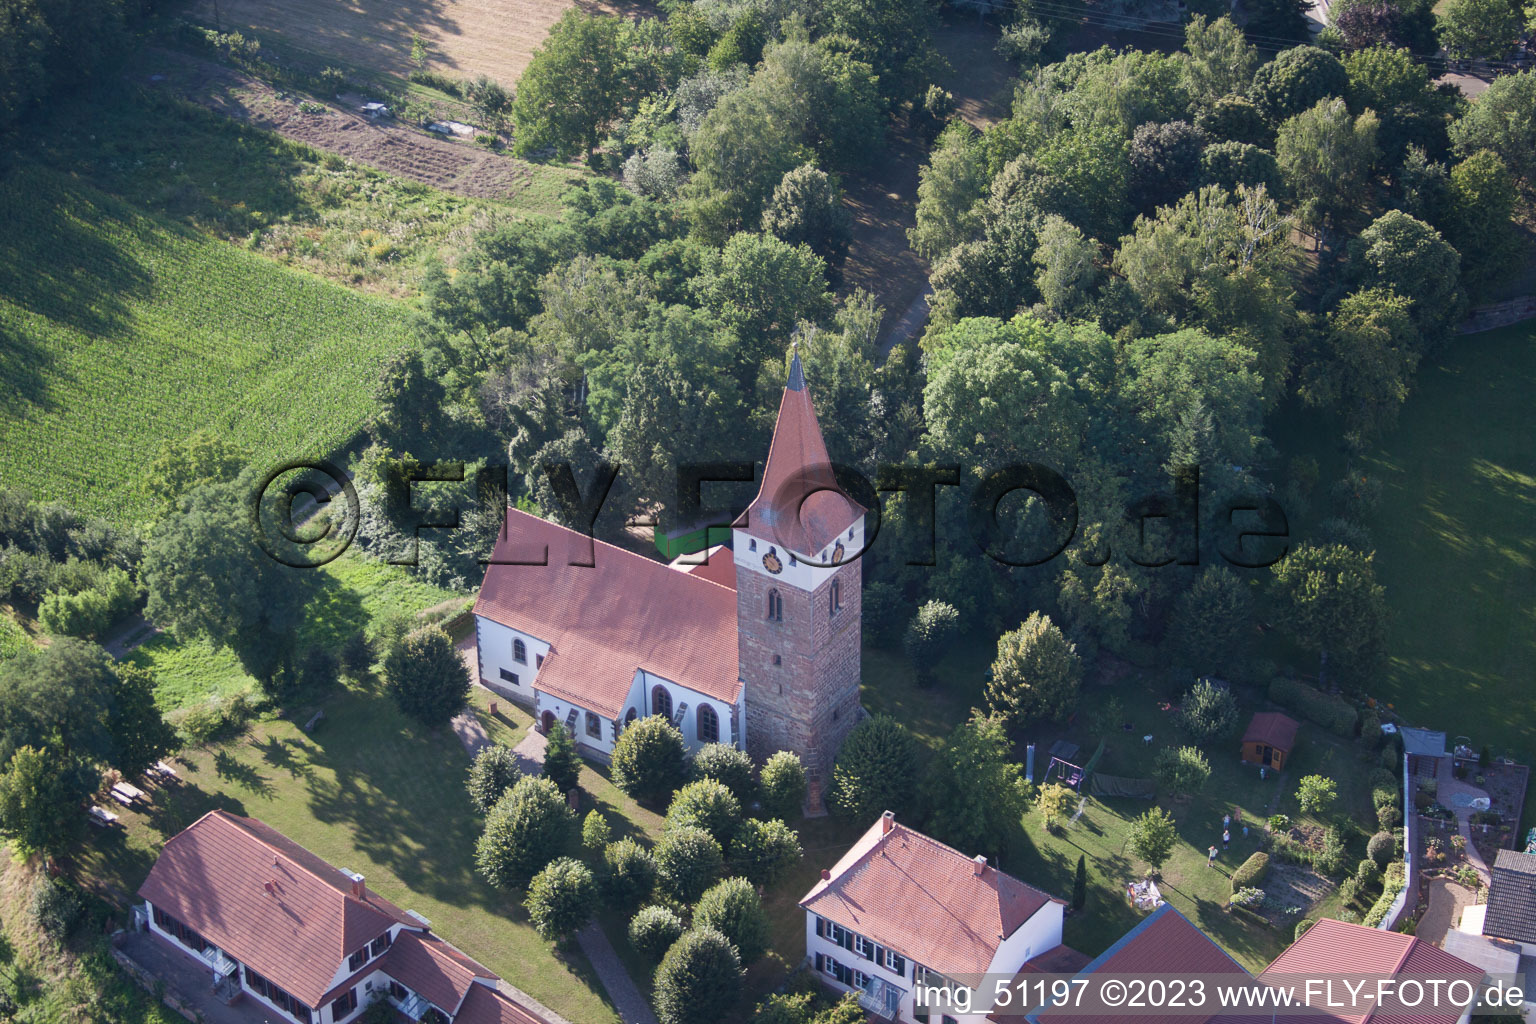 Minfeld im Bundesland Rheinland-Pfalz, Deutschland aus der Luft betrachtet